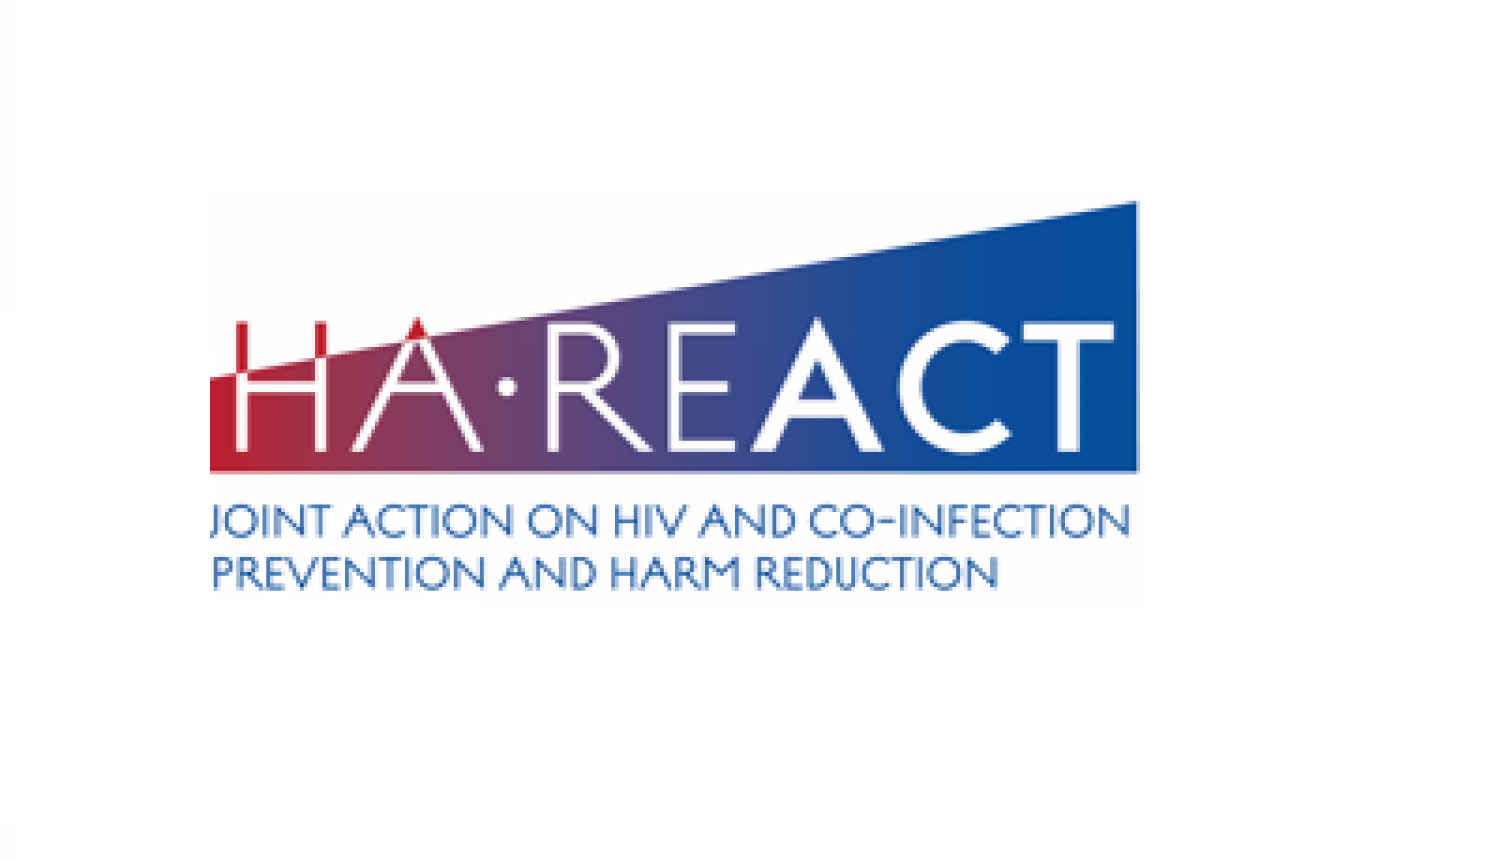 HA REACT logo